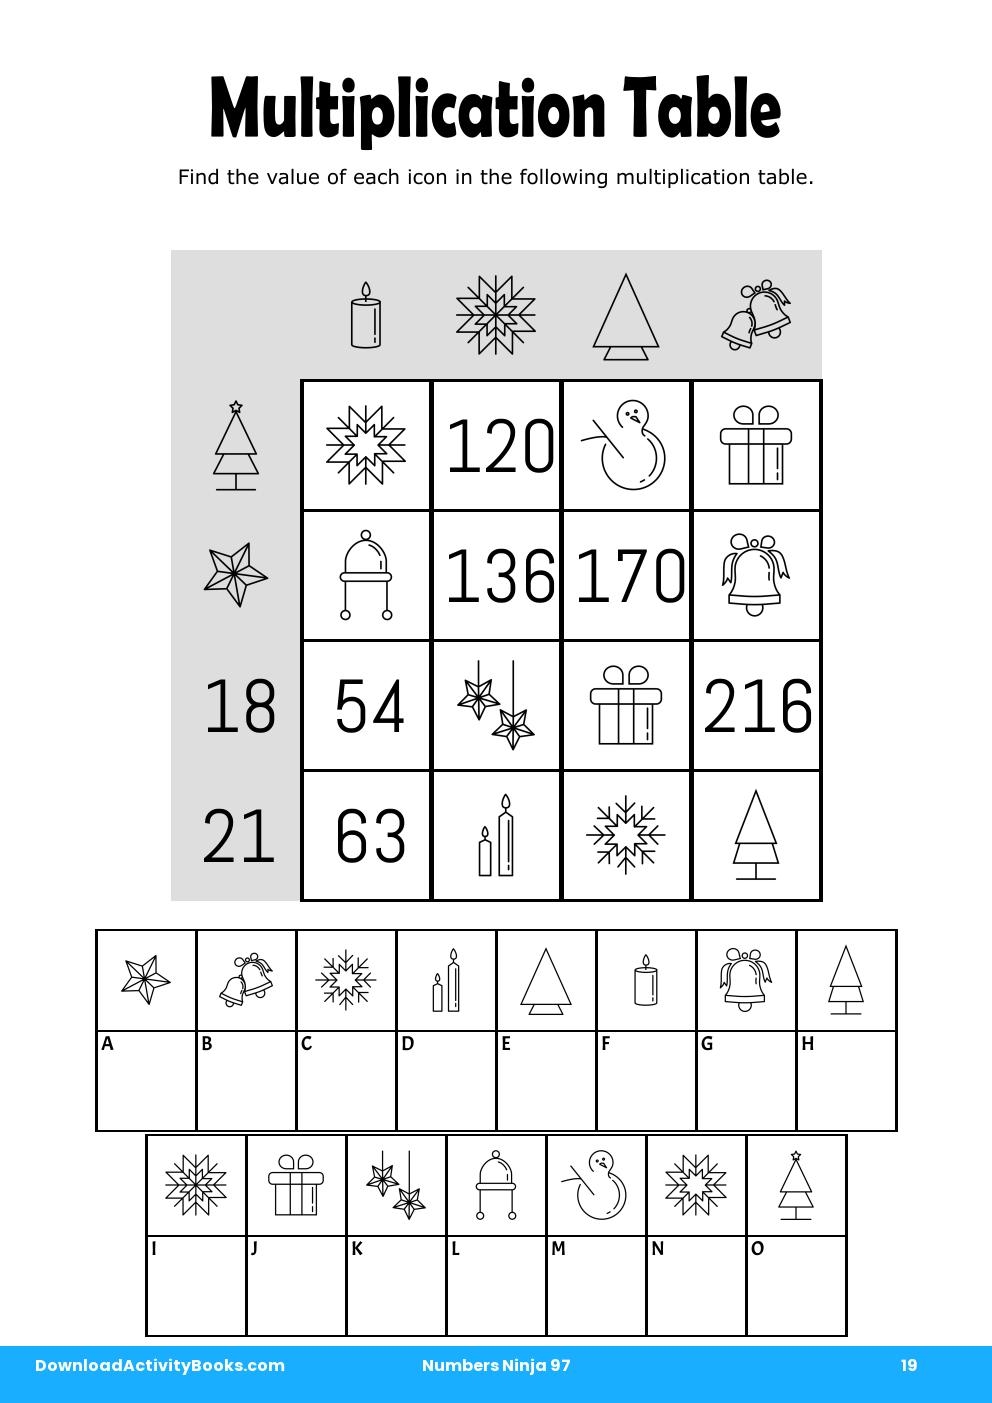 Multiplication Table in Numbers Ninja 97